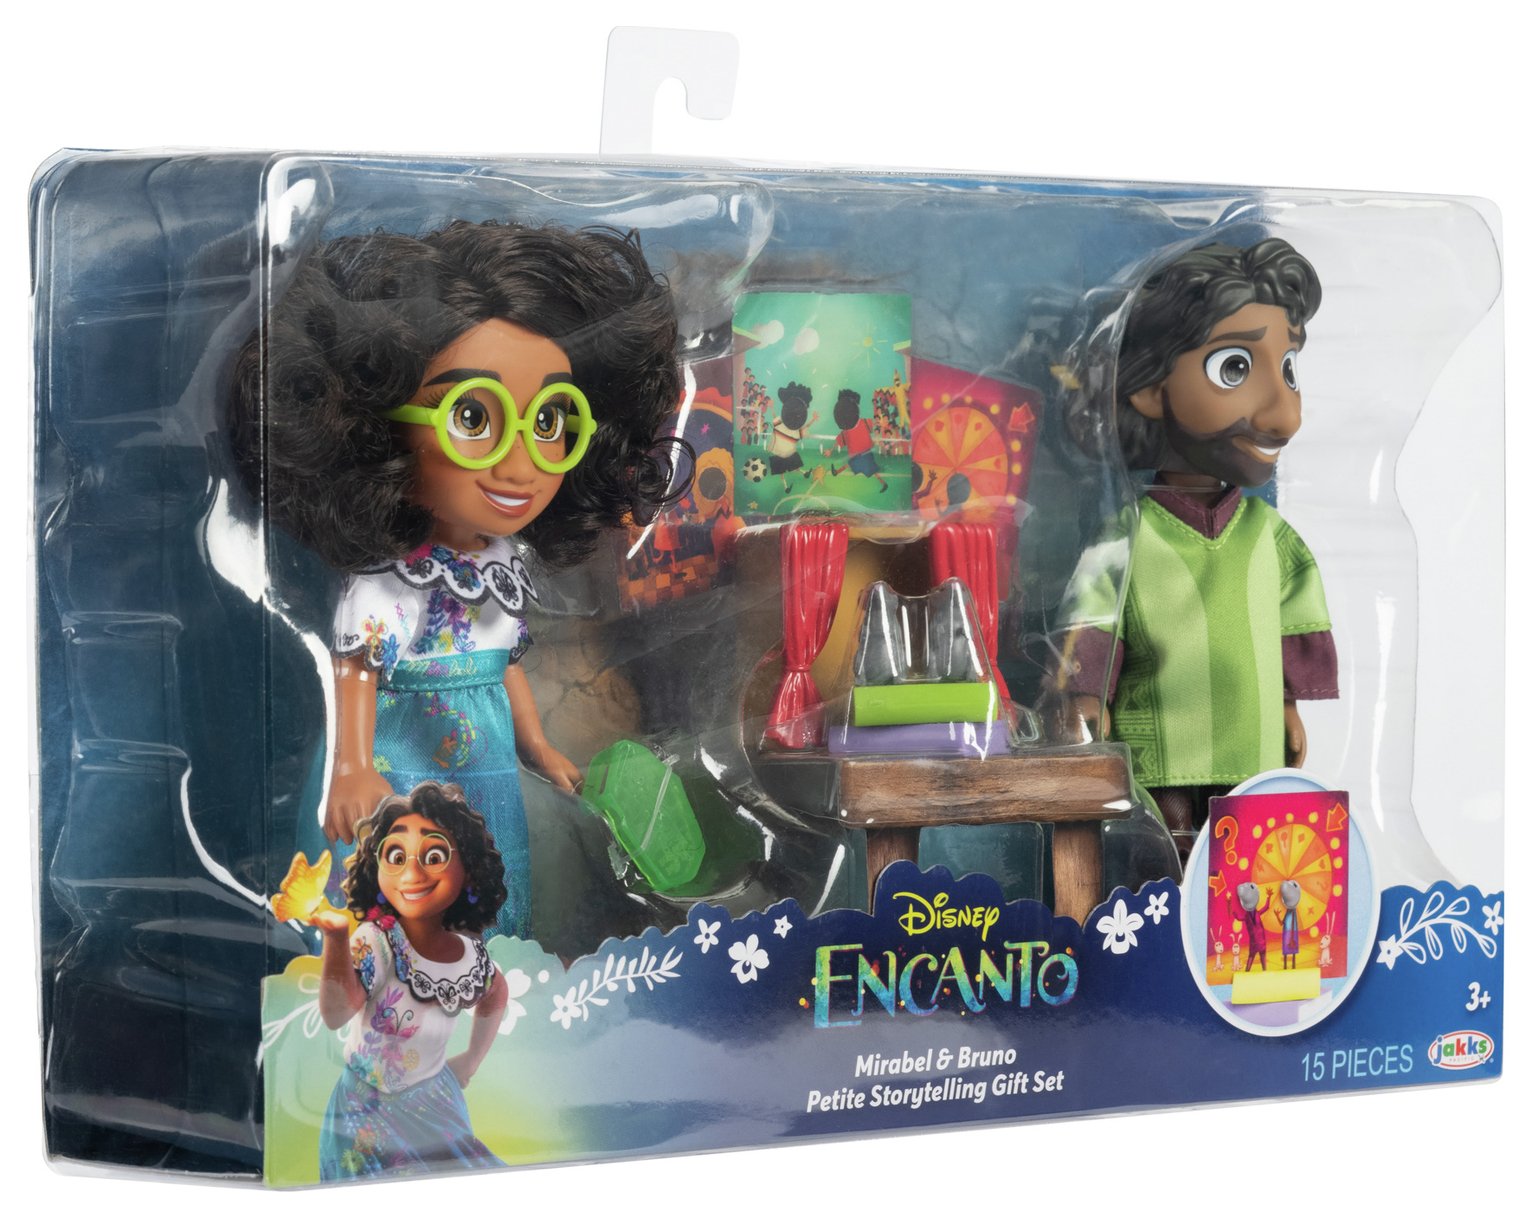 Disney Encanto Mirabel & Bruno Petite Storytelling Gift Set